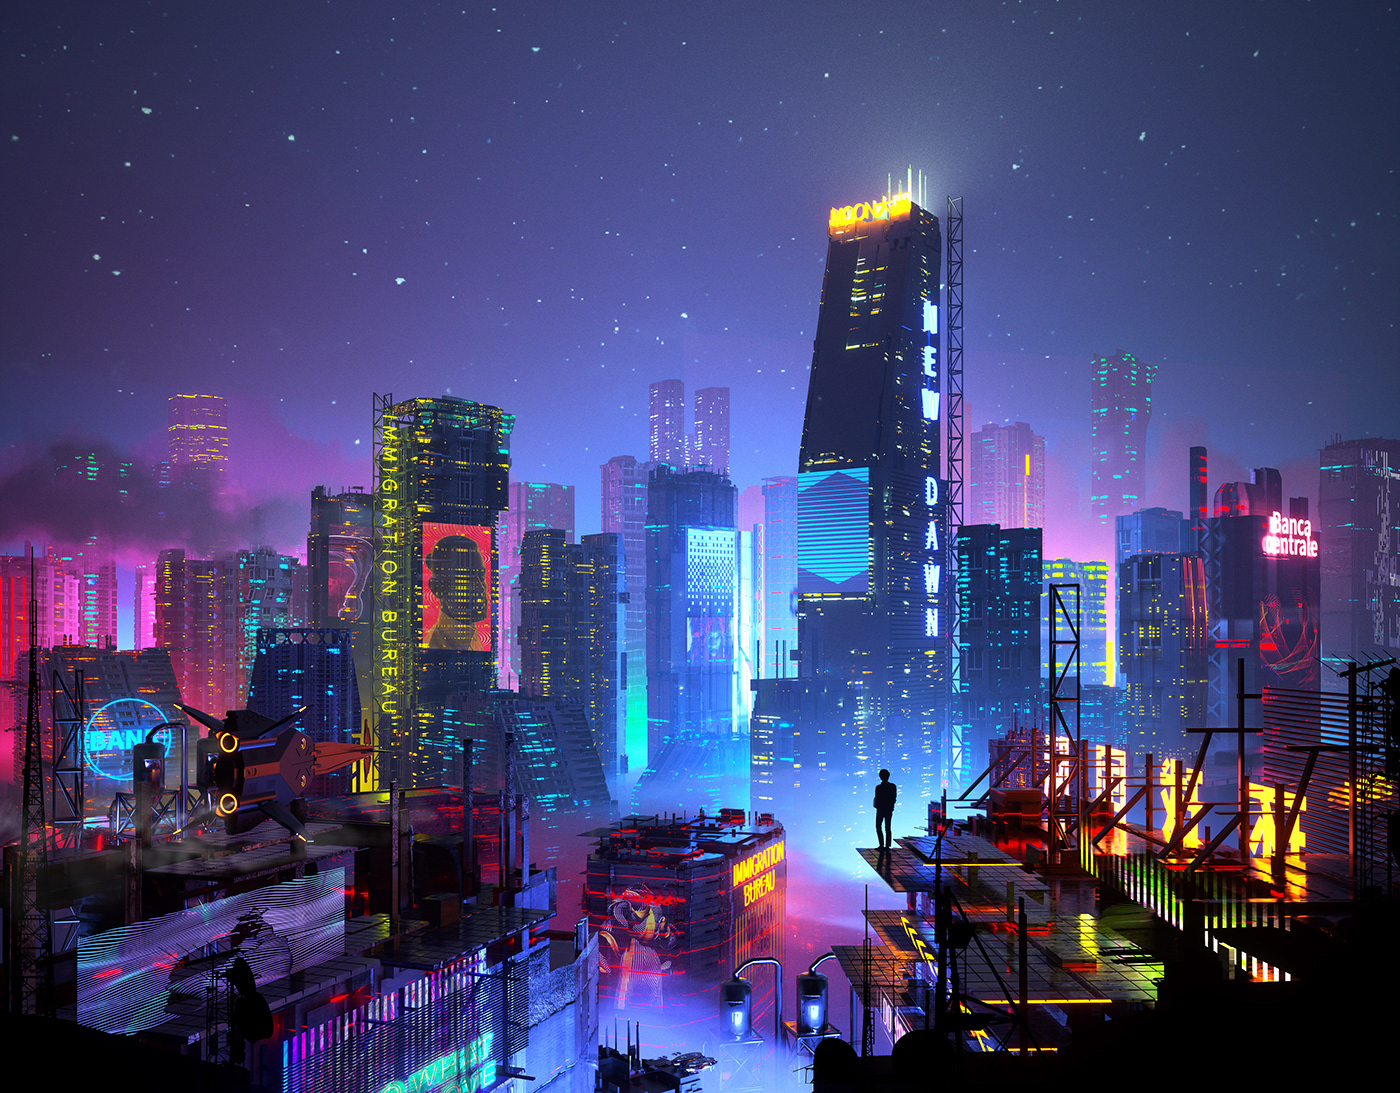 3D building cinema 4d concept Cyberpunk future octane sci-fi Scifi visual